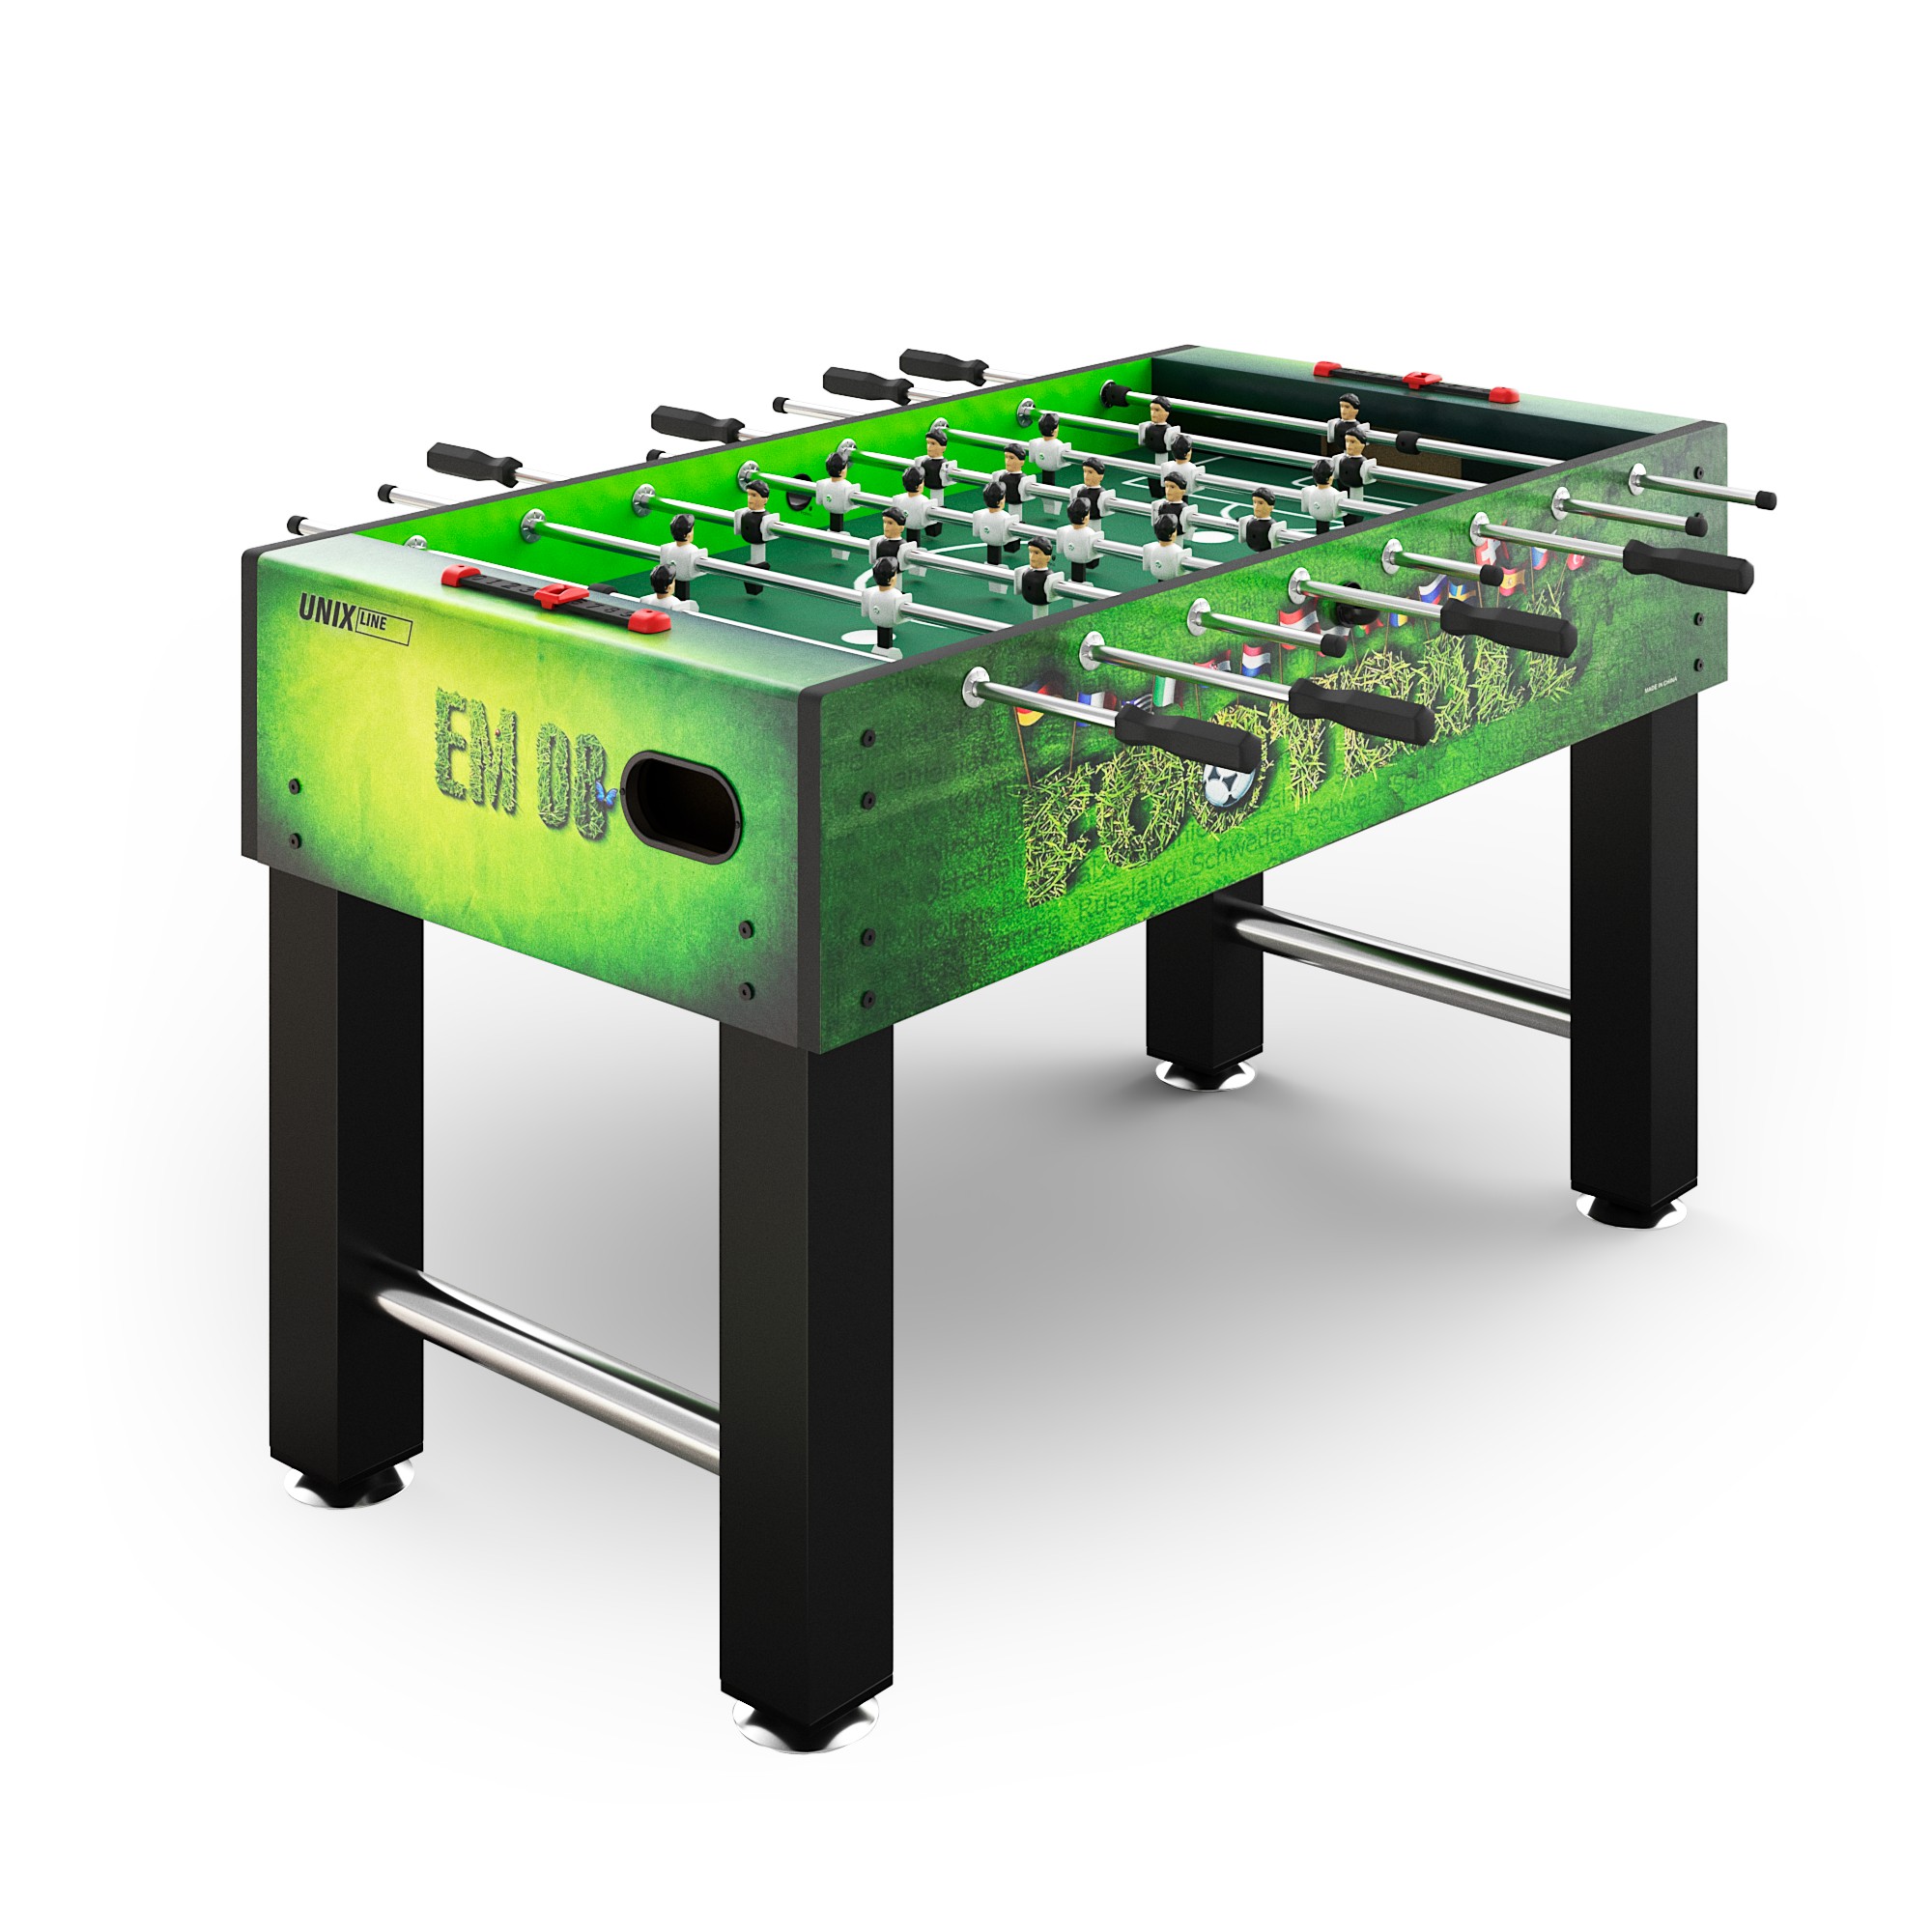 Игровой стол Unix Line Футбол - Кикер (140х74 cм) GTSFU140X74GR Green 2000_2000